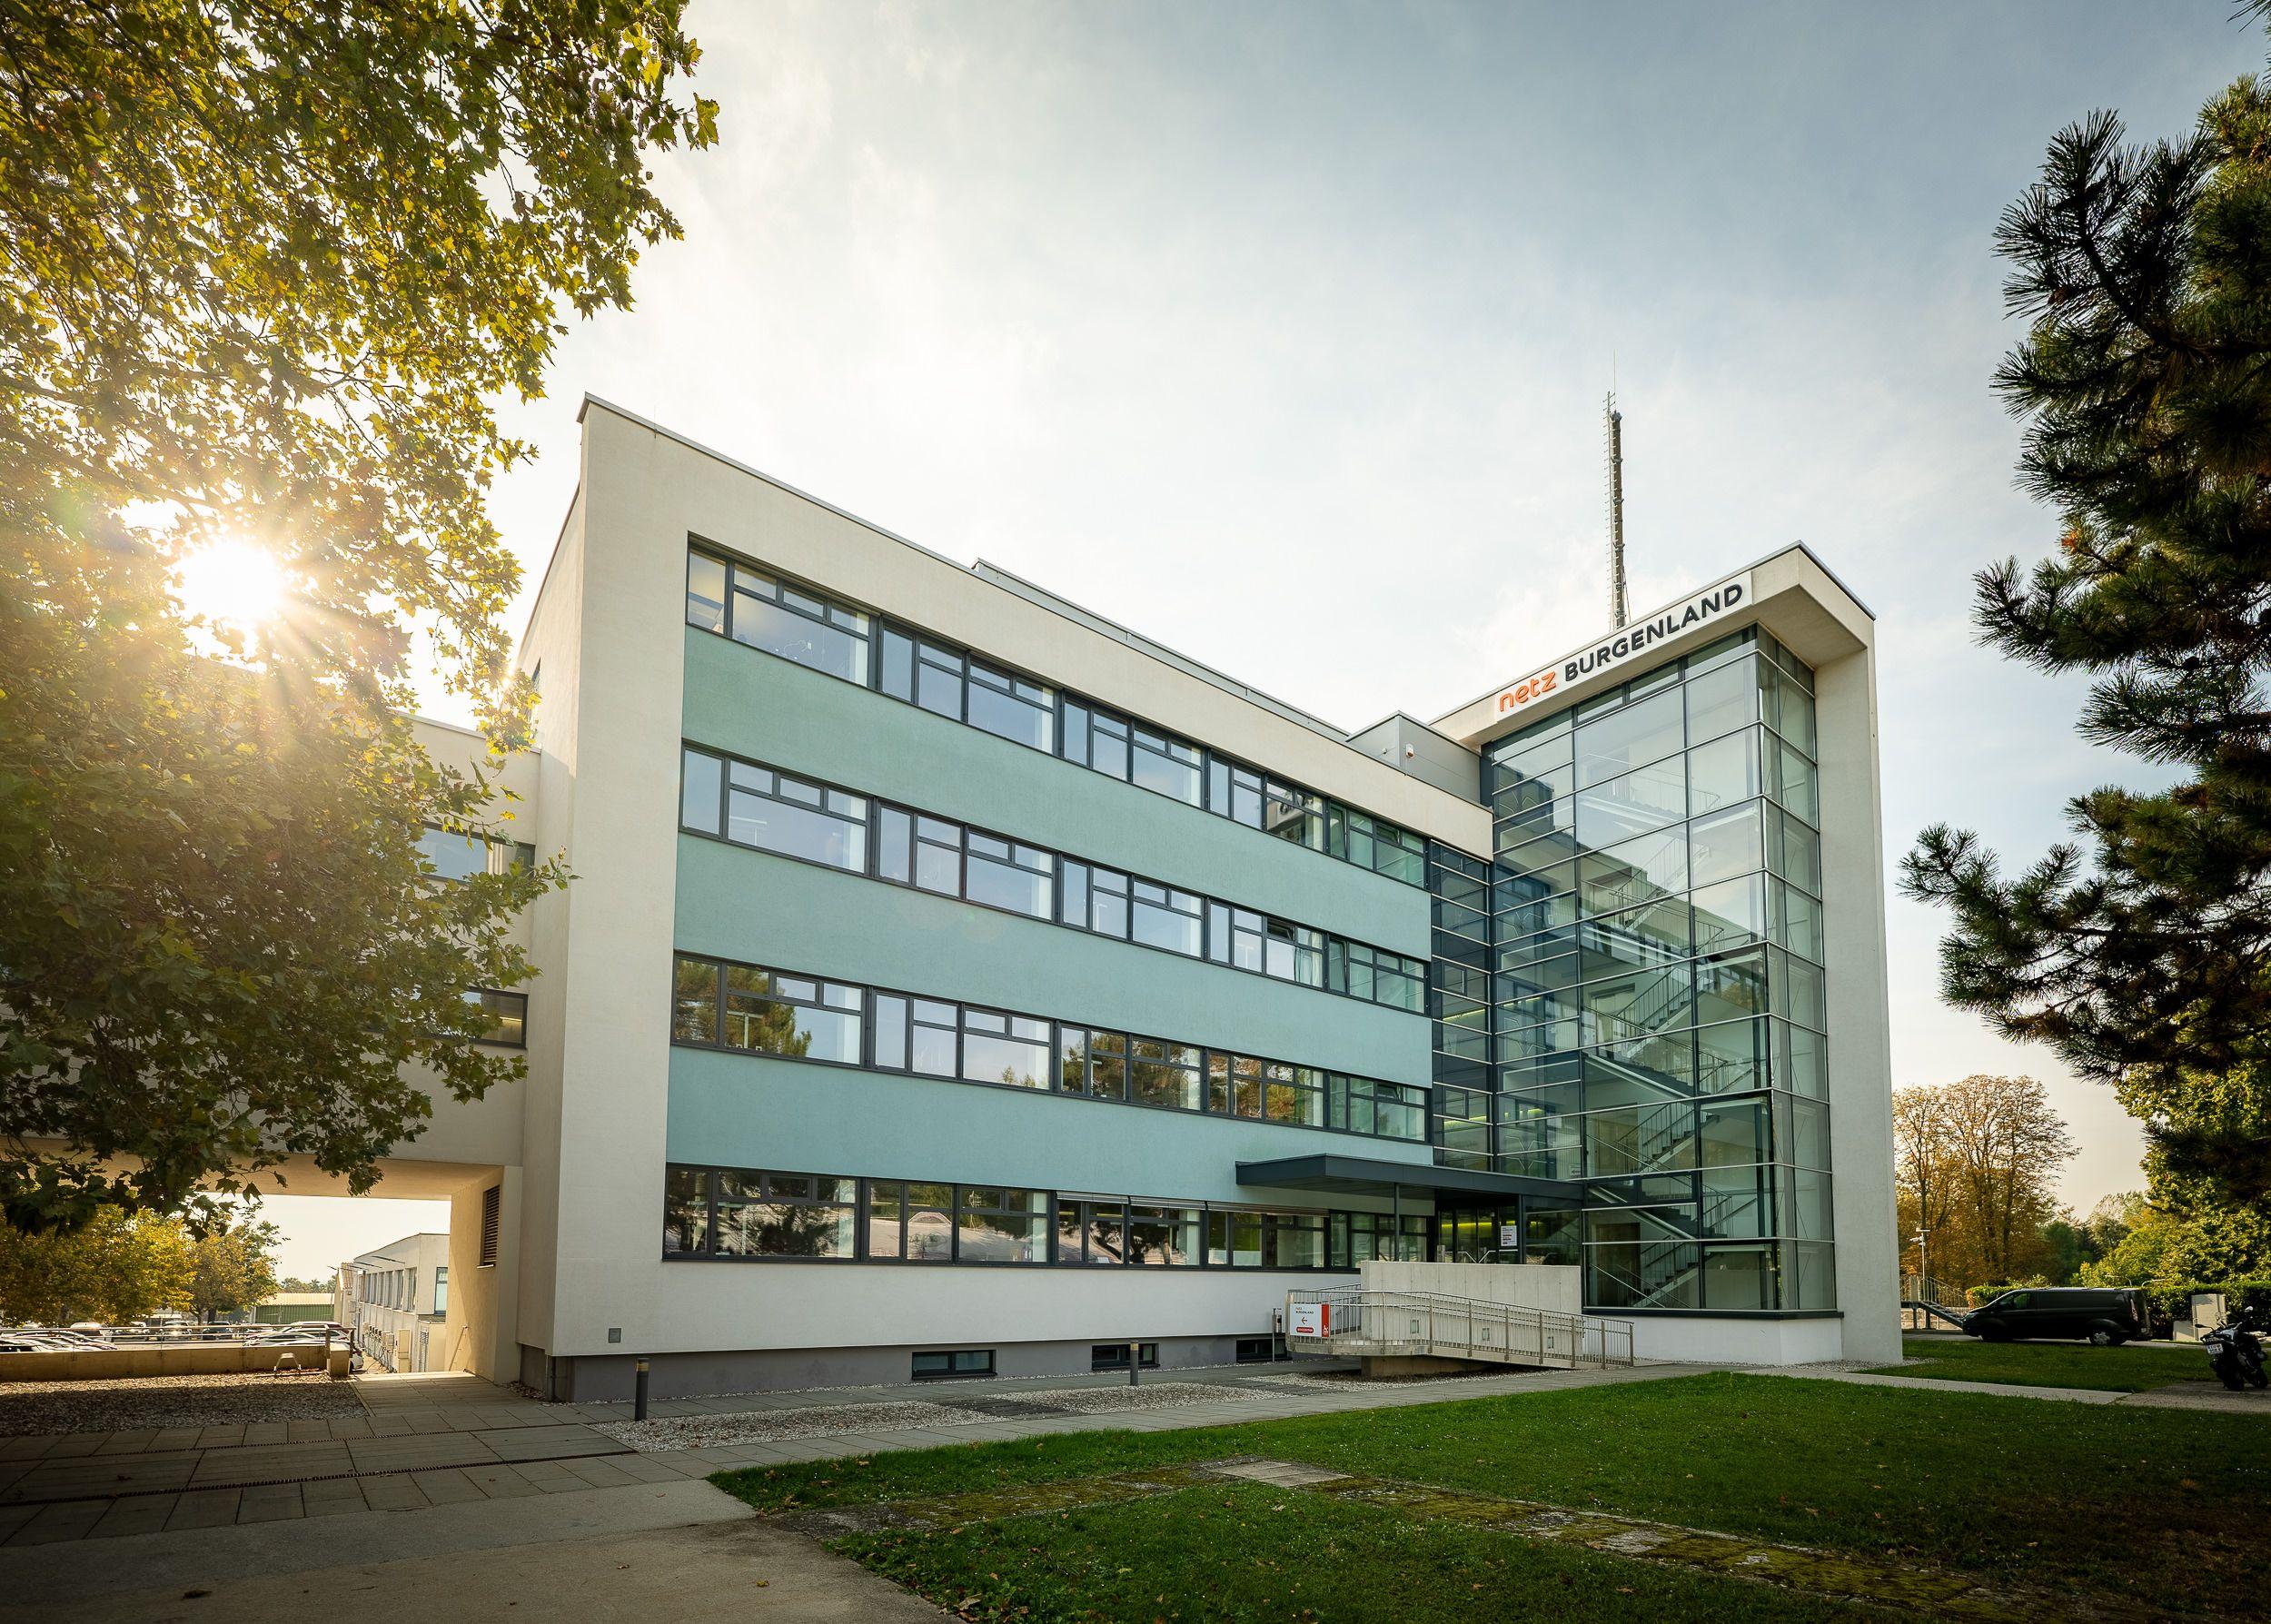 Moderne Bürogebäude von Netz Burgenland mit Glasfassade und Firmenlogo, sonniger Tag.